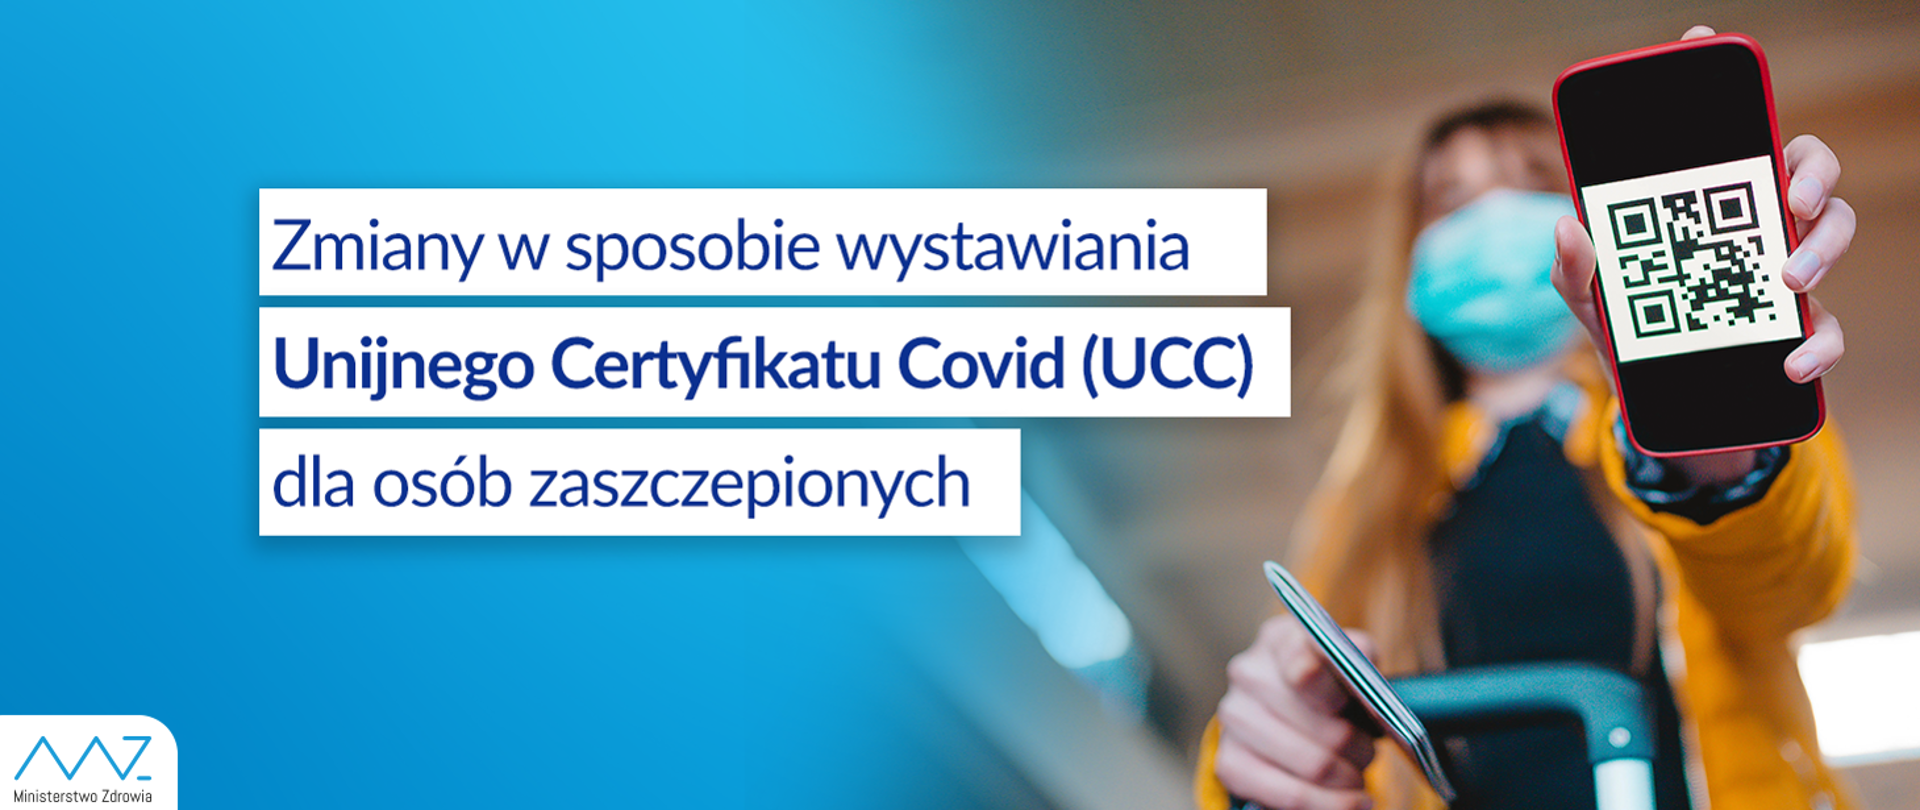 Zmiany w sposobie wystawiania Unijnego Certyfikatu Covid (UCC) dla osób zaszczepionych